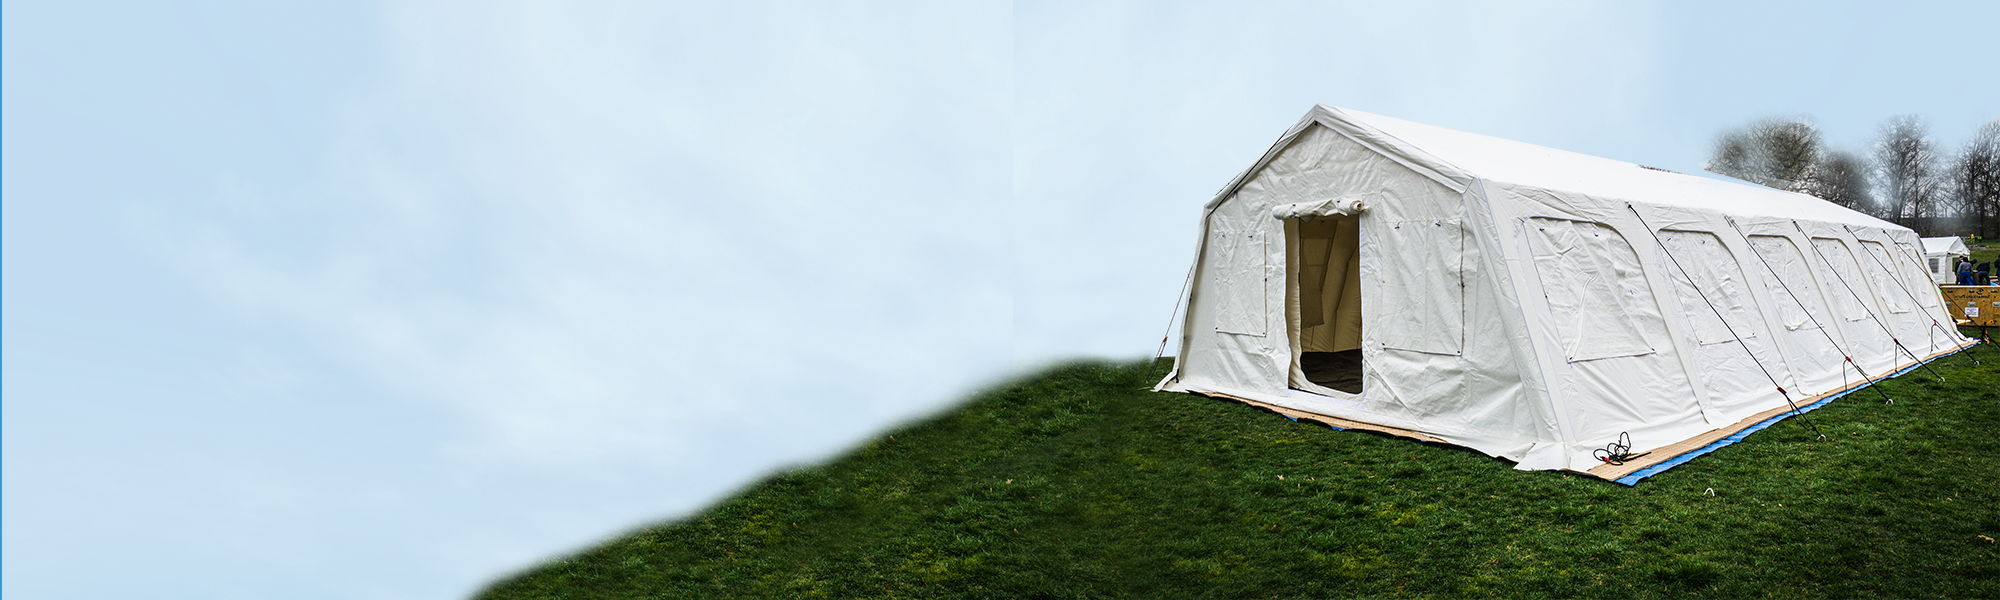 Field hospital tent